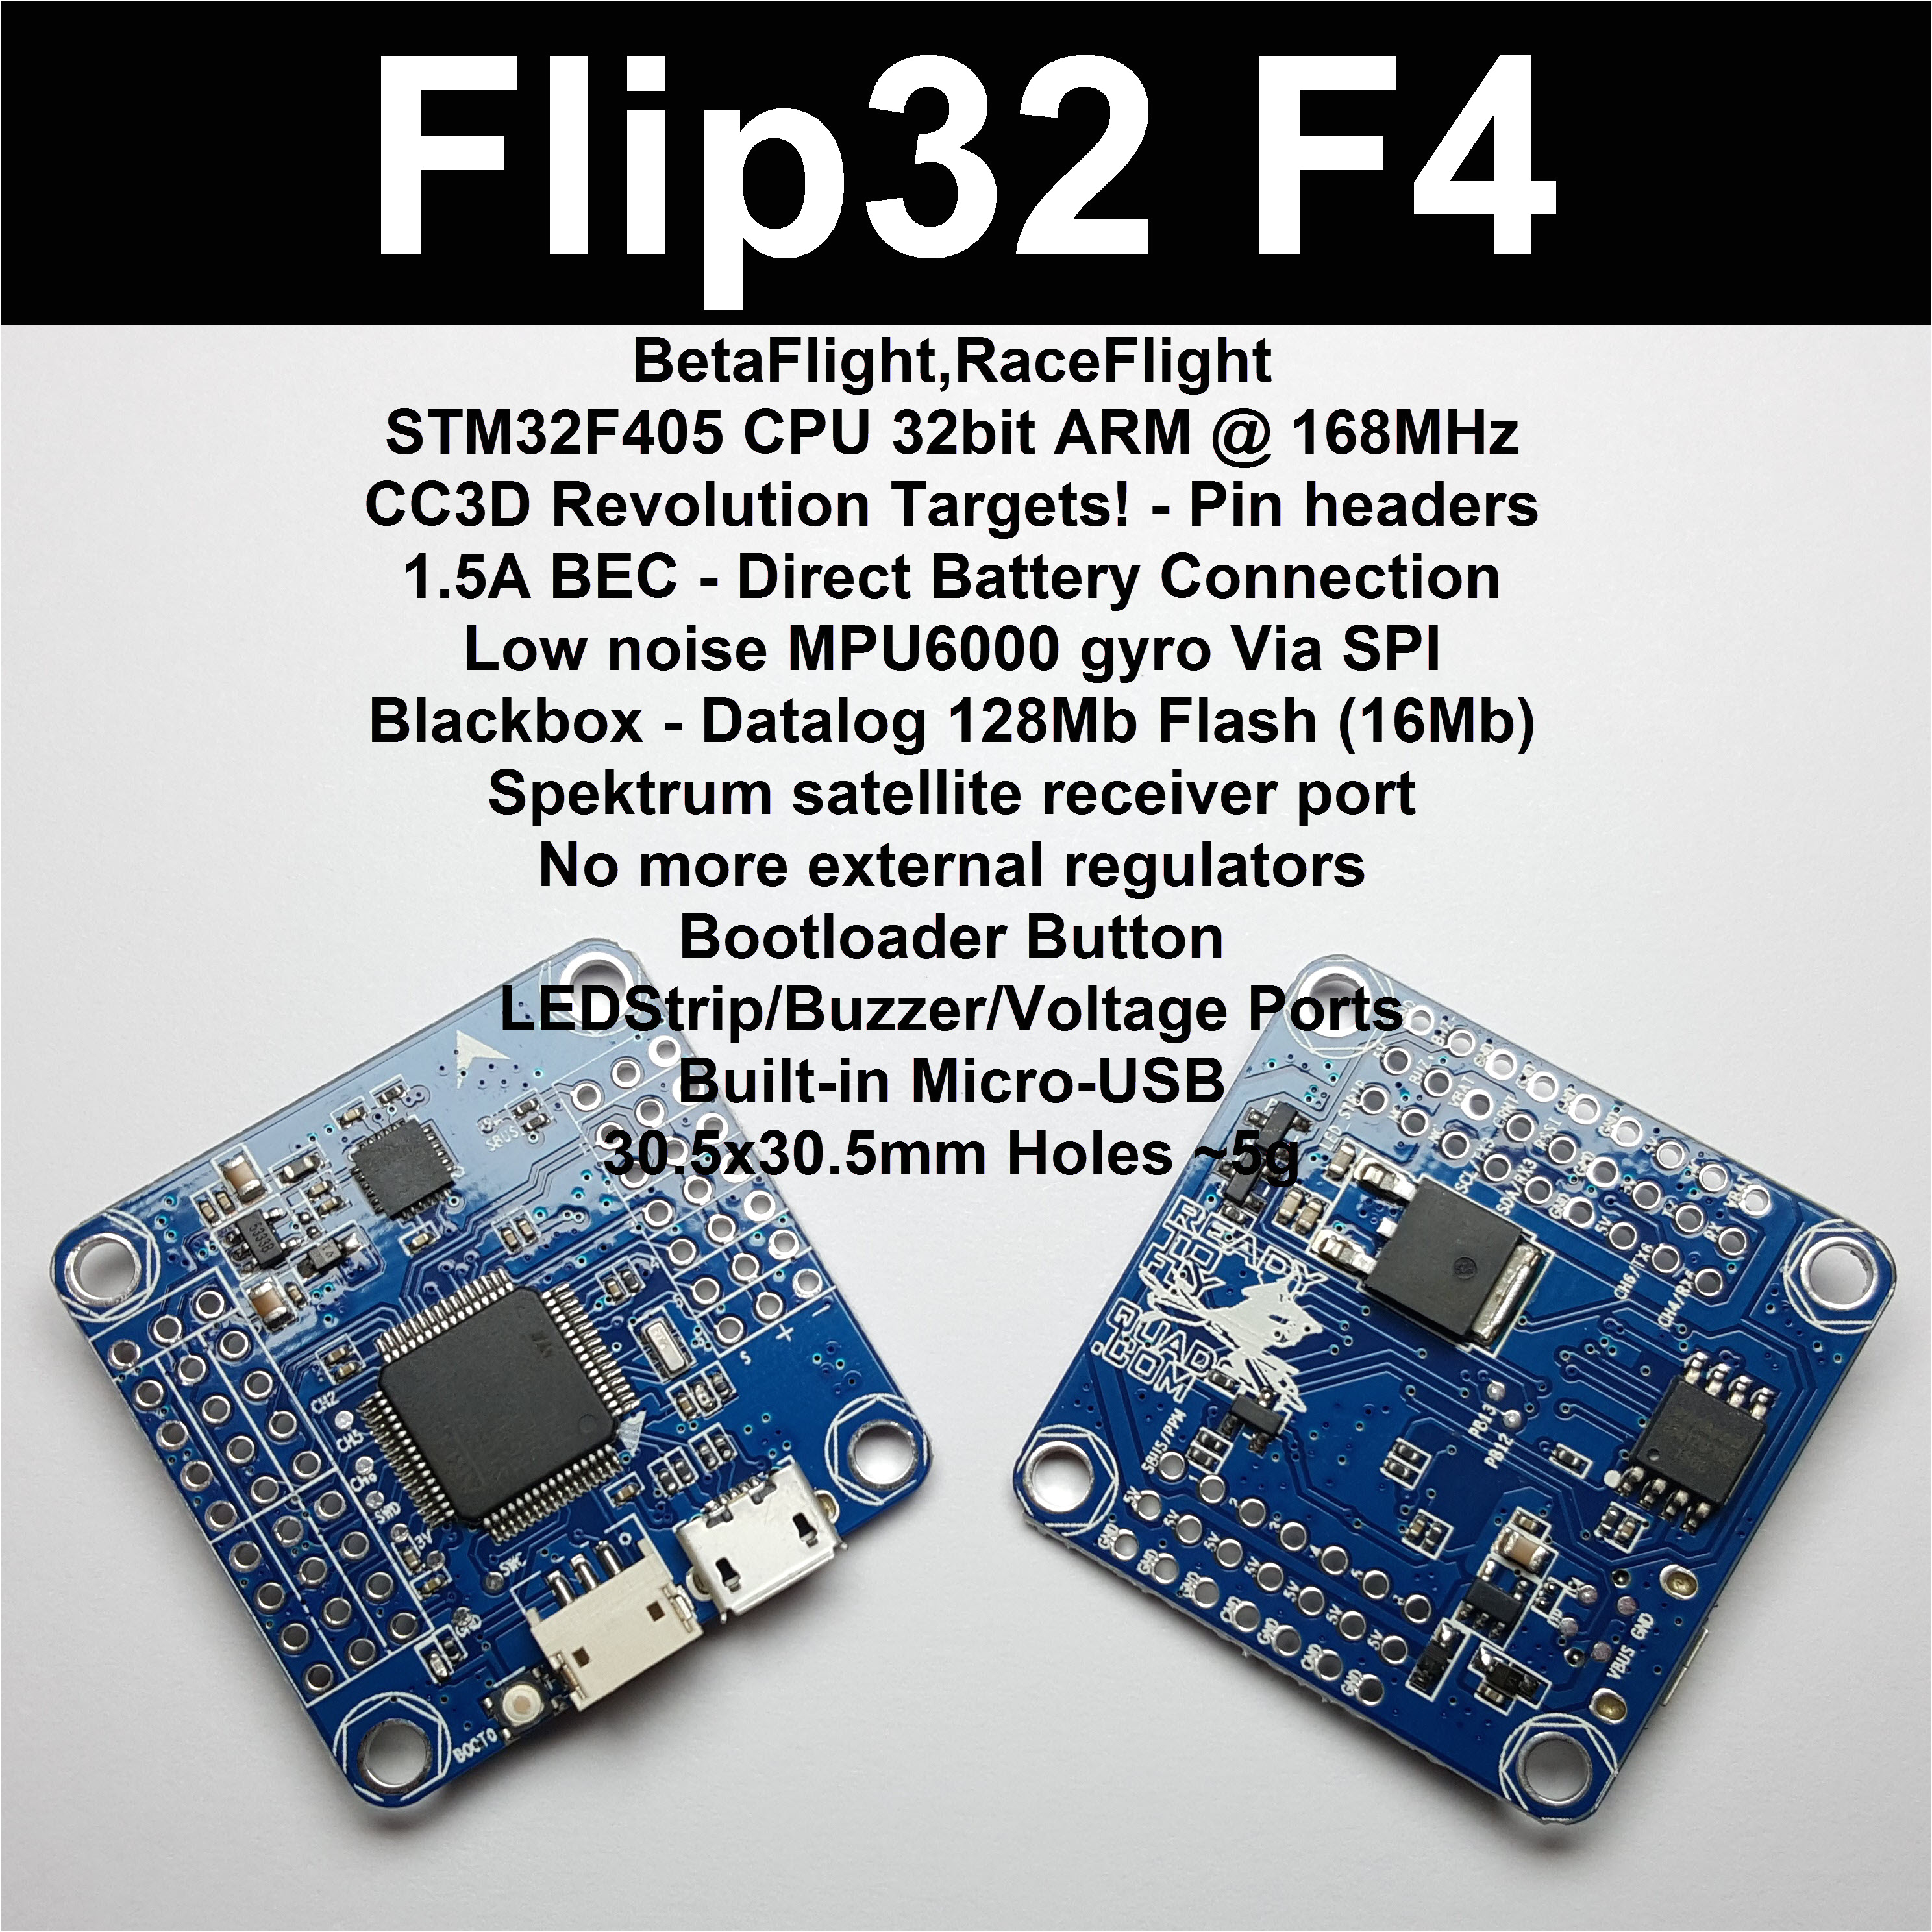 flip32 f4 revo pin header edition v2